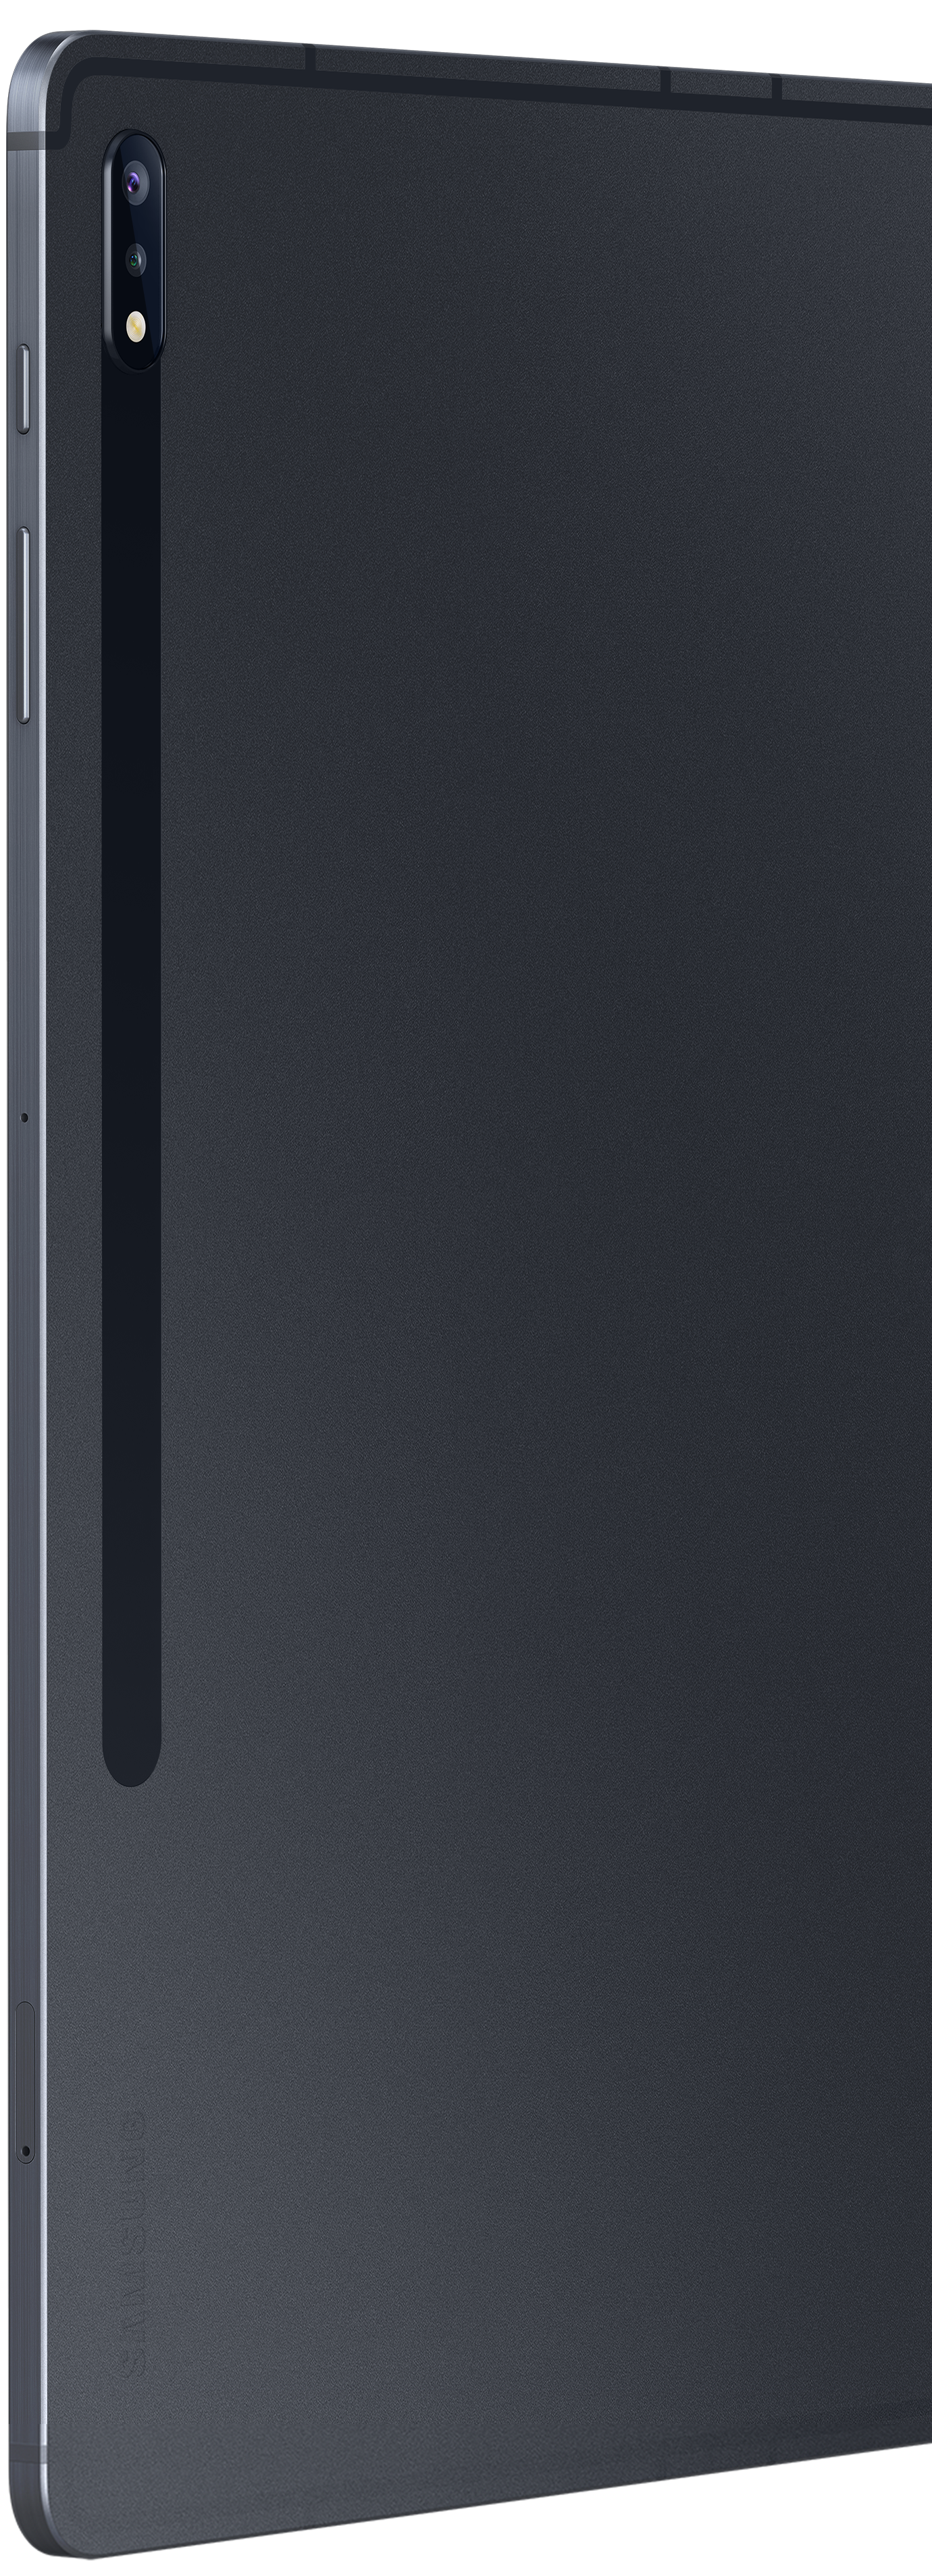 Vue de dos d'une Galaxy Tab S7+ montrant un gros plan des capteurs photo